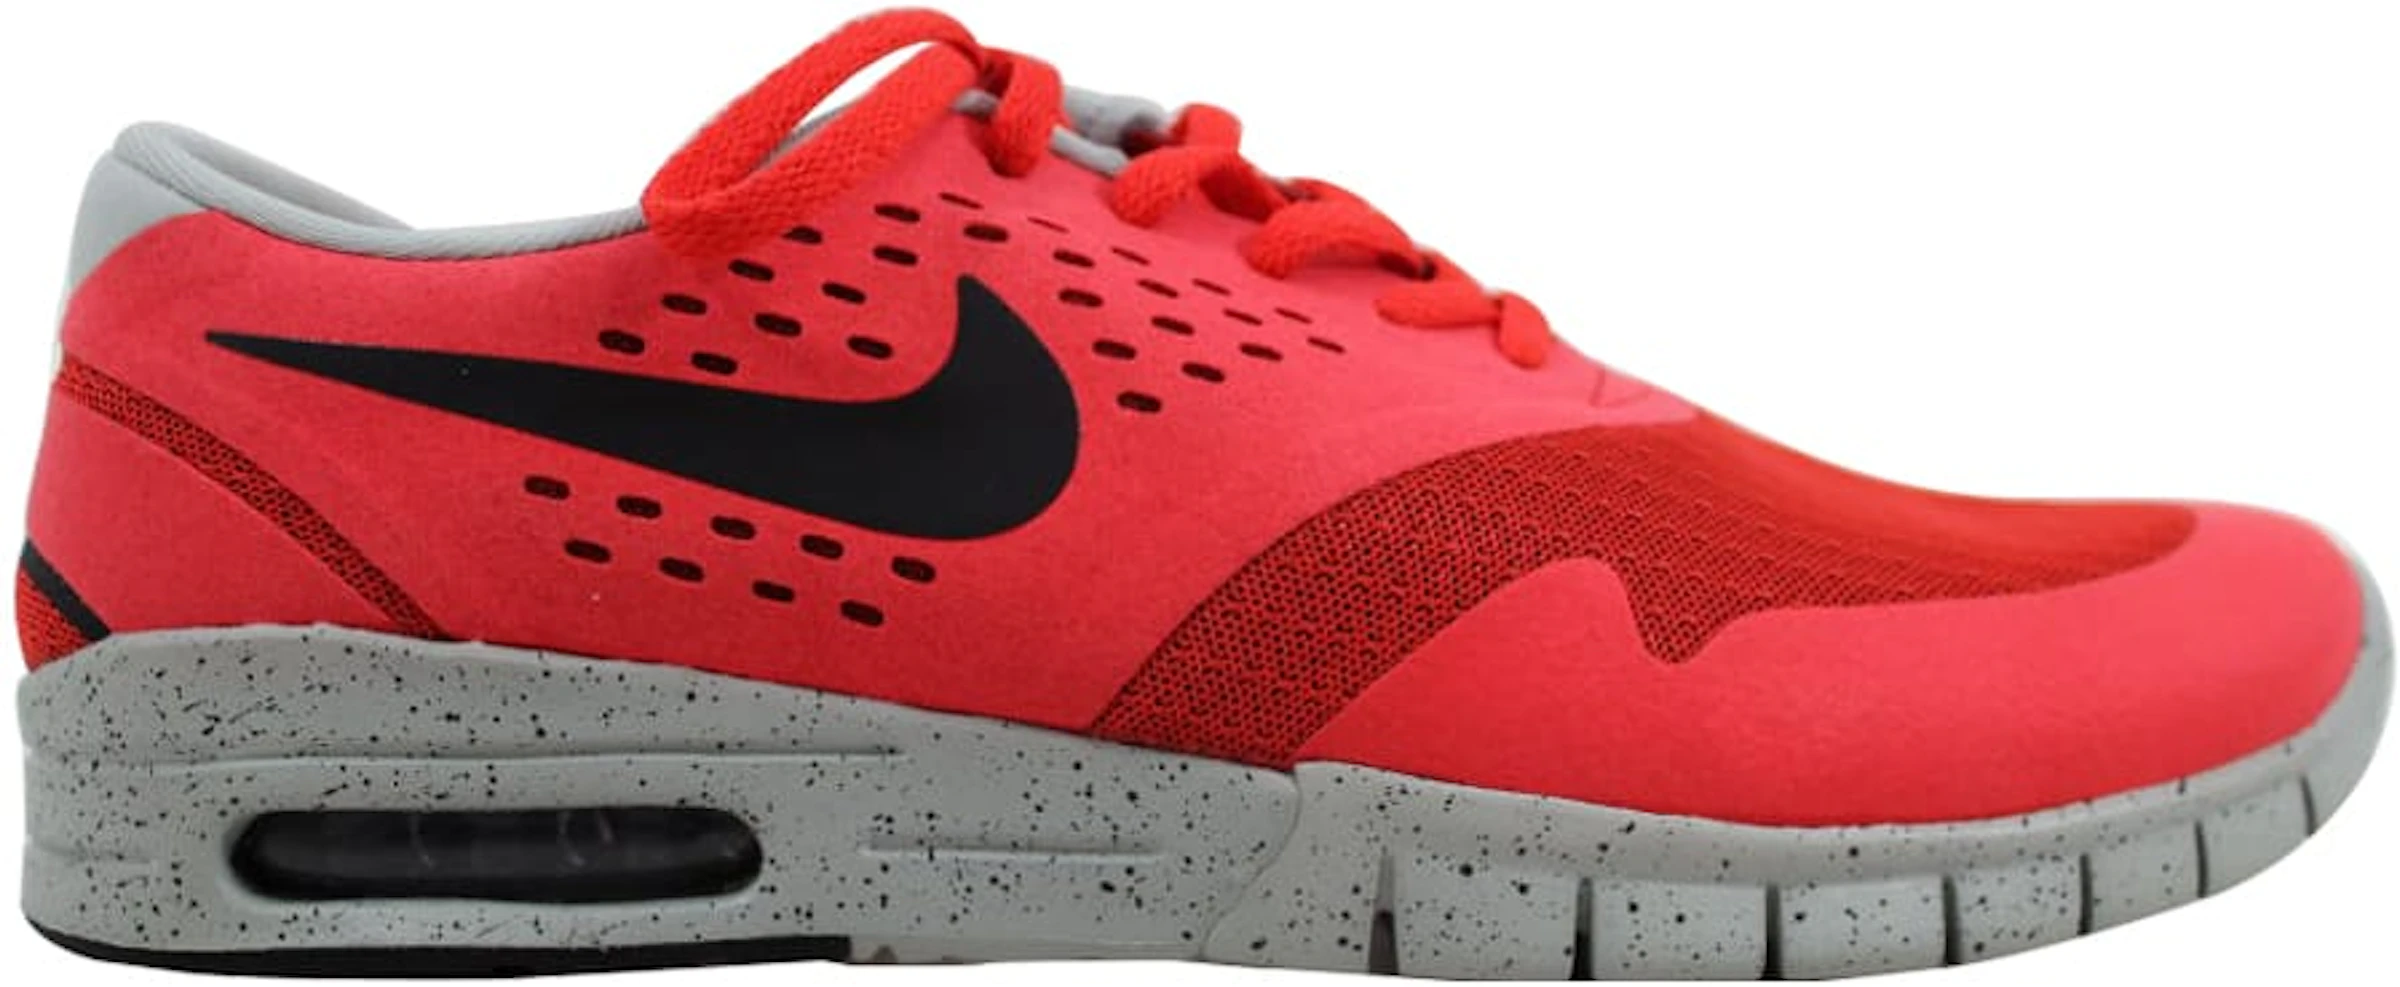 Nike Eric Koston 2 Max Crimson - 631047-600 - ES